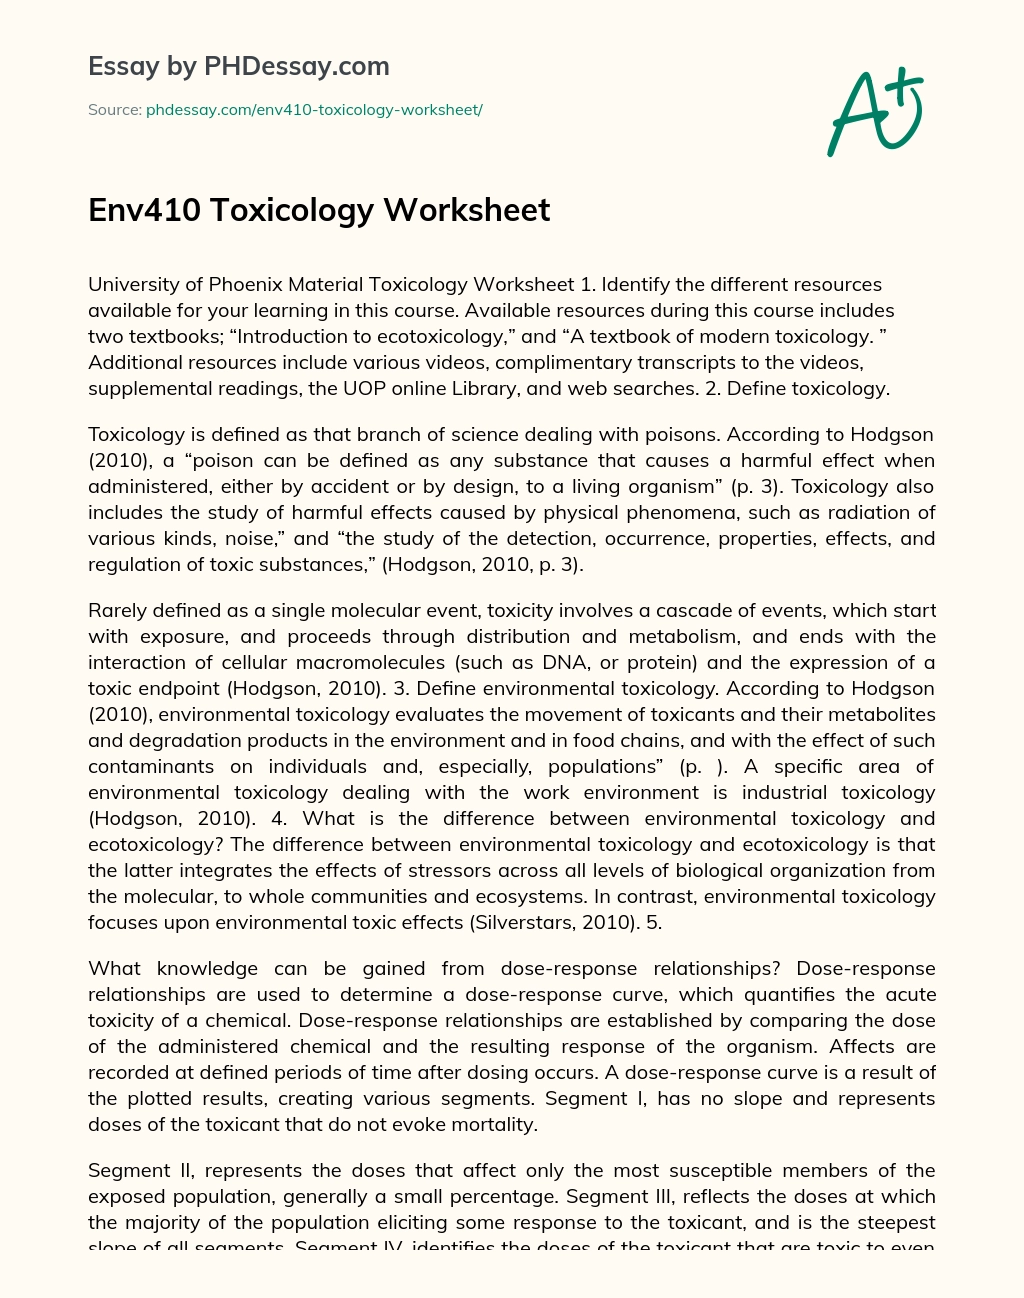 Env410 Toxicology Worksheet essay